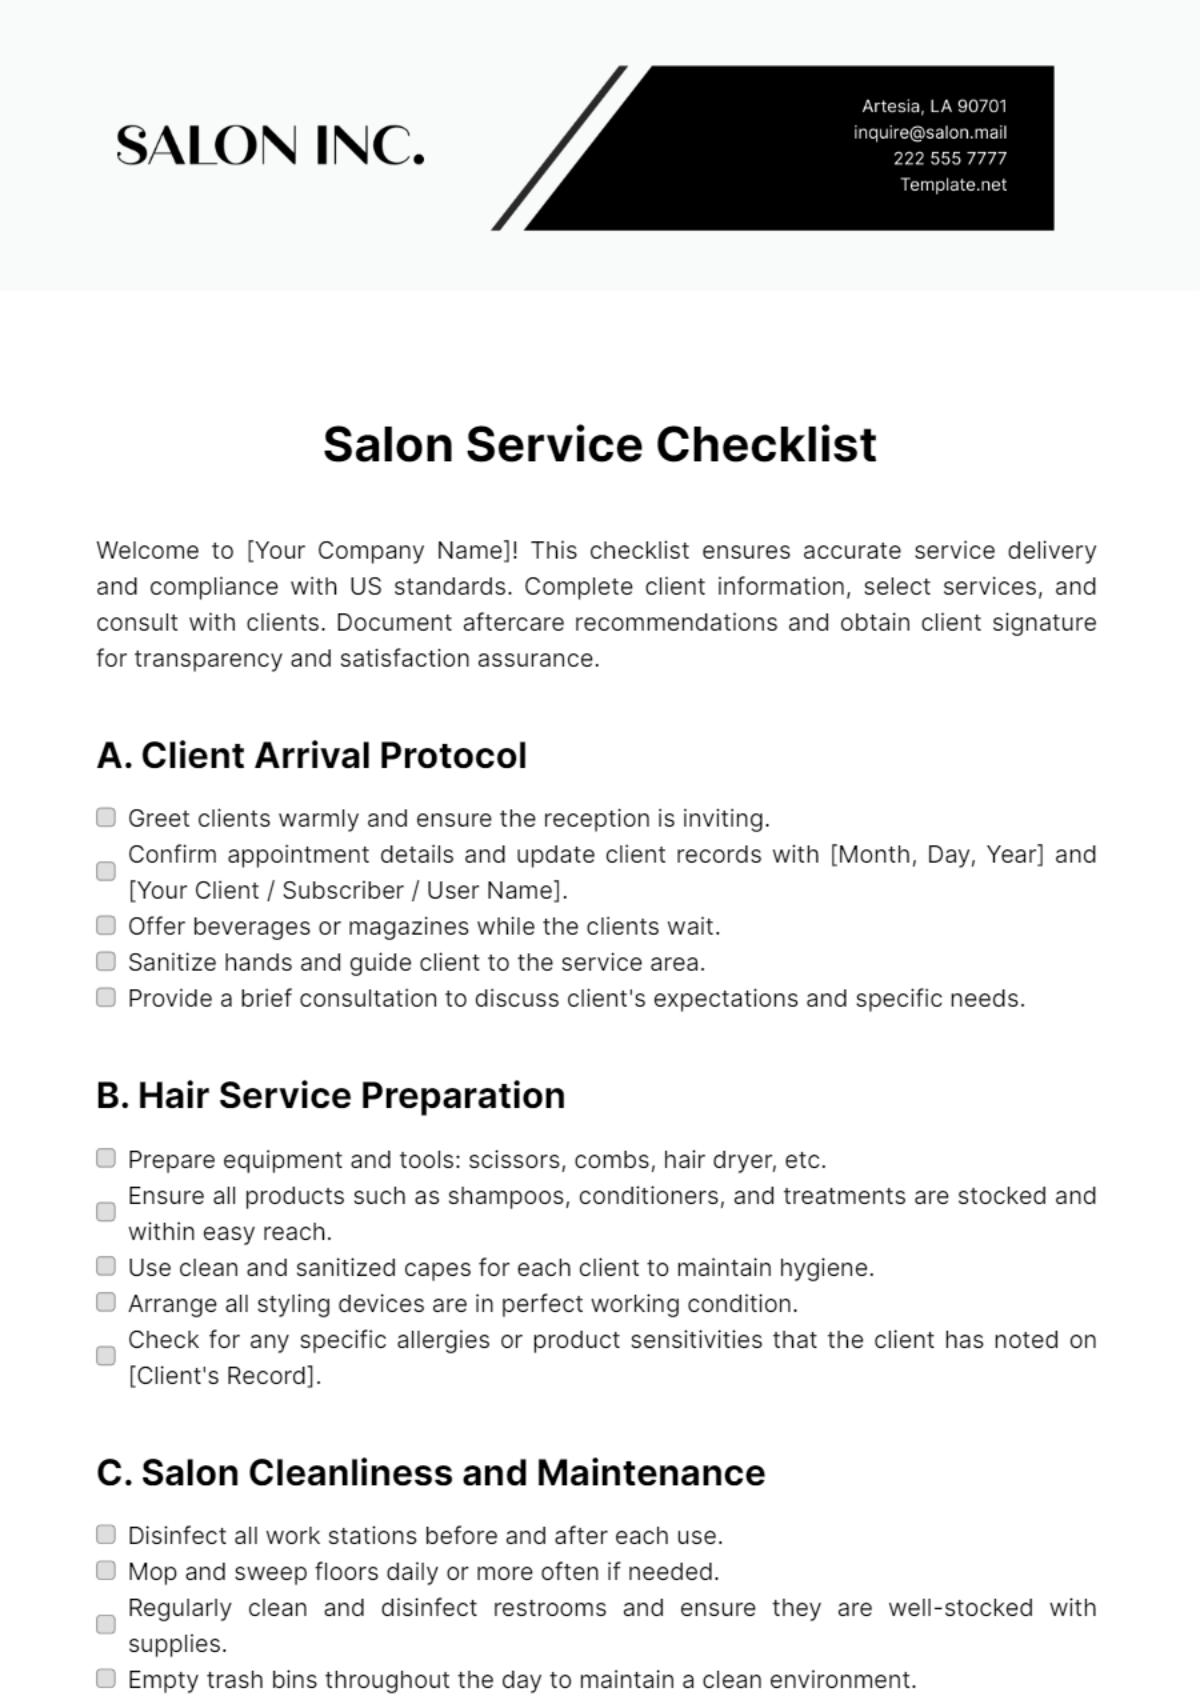 Salon Service Checklist Template